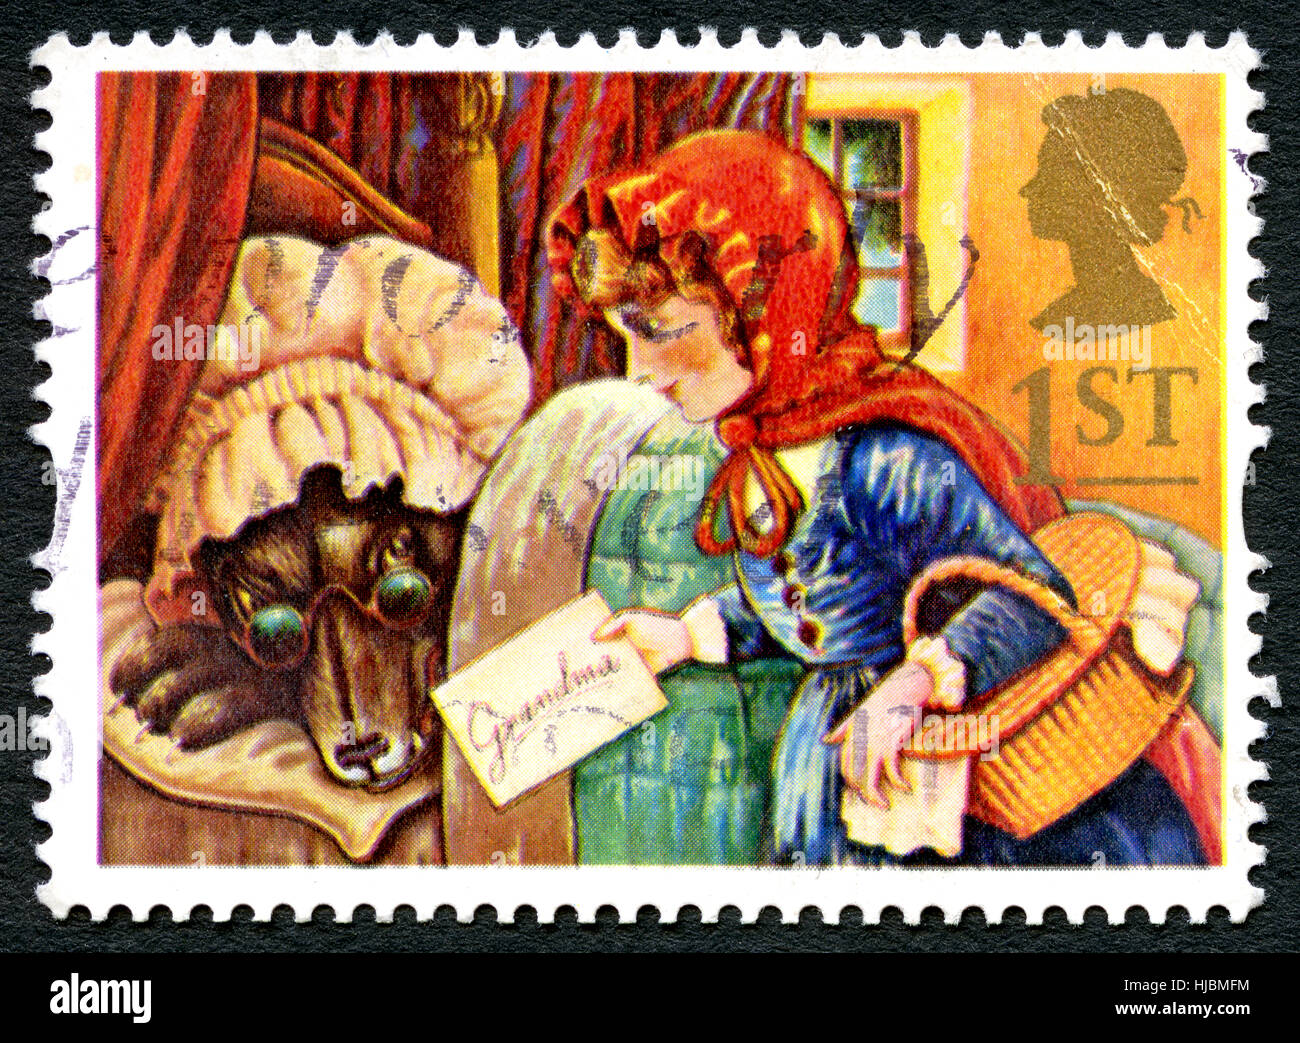 Großbritannien - CIRCA 1994: Eine gebrauchte Briefmarke aus dem Vereinigten Königreich, Darstellung einer Illustration aus der Little Red Riding Hood Volkssage, circa 1994. Stockfoto